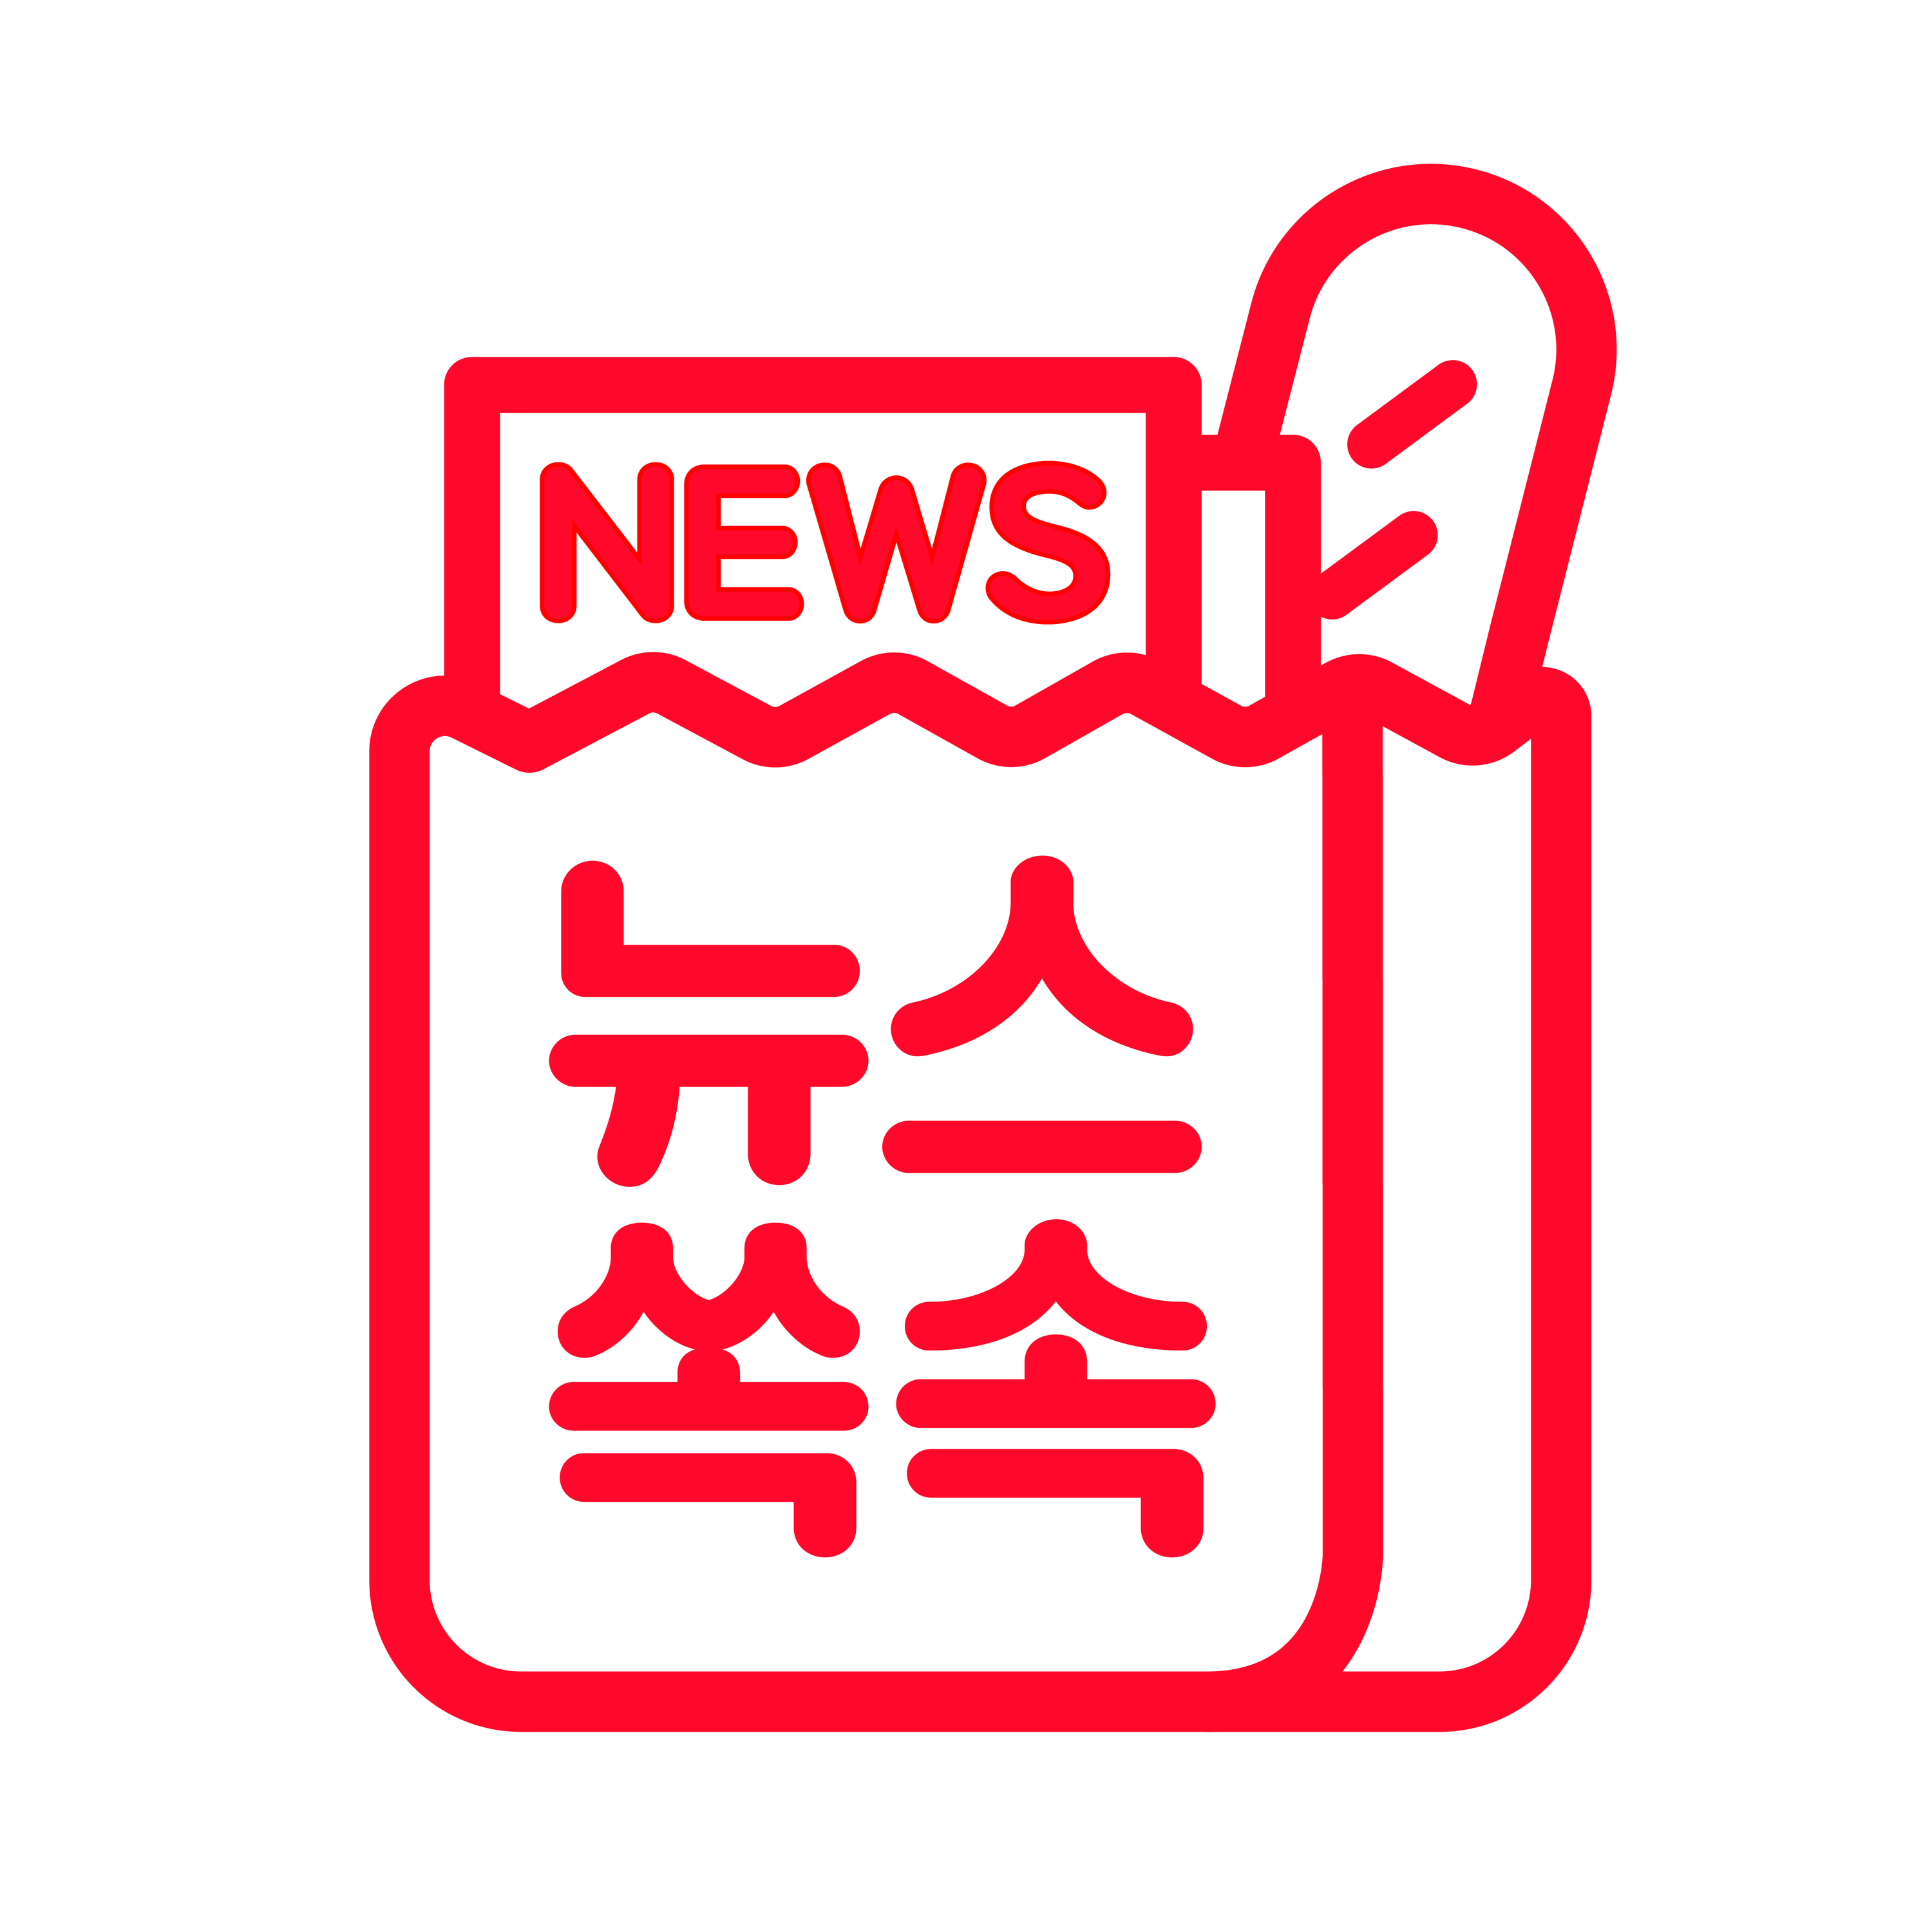 9/13(월) "윤석열 게이트" VS "박지원 게이트"...정치권 ‘고발사주’ 의혹 공방 